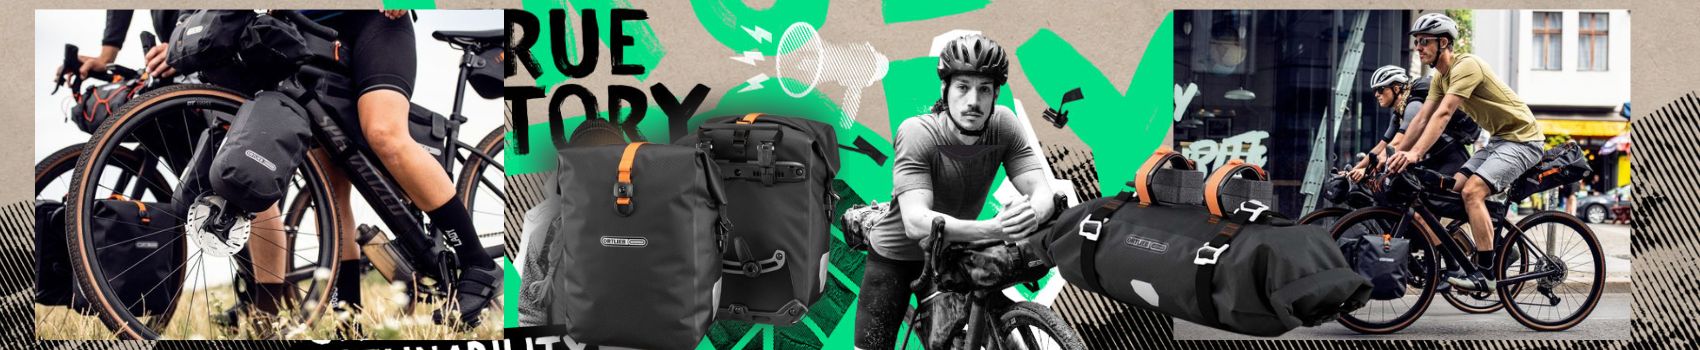 Bike Packing - Ortlieb: Borse per bici e backpack Waterproof